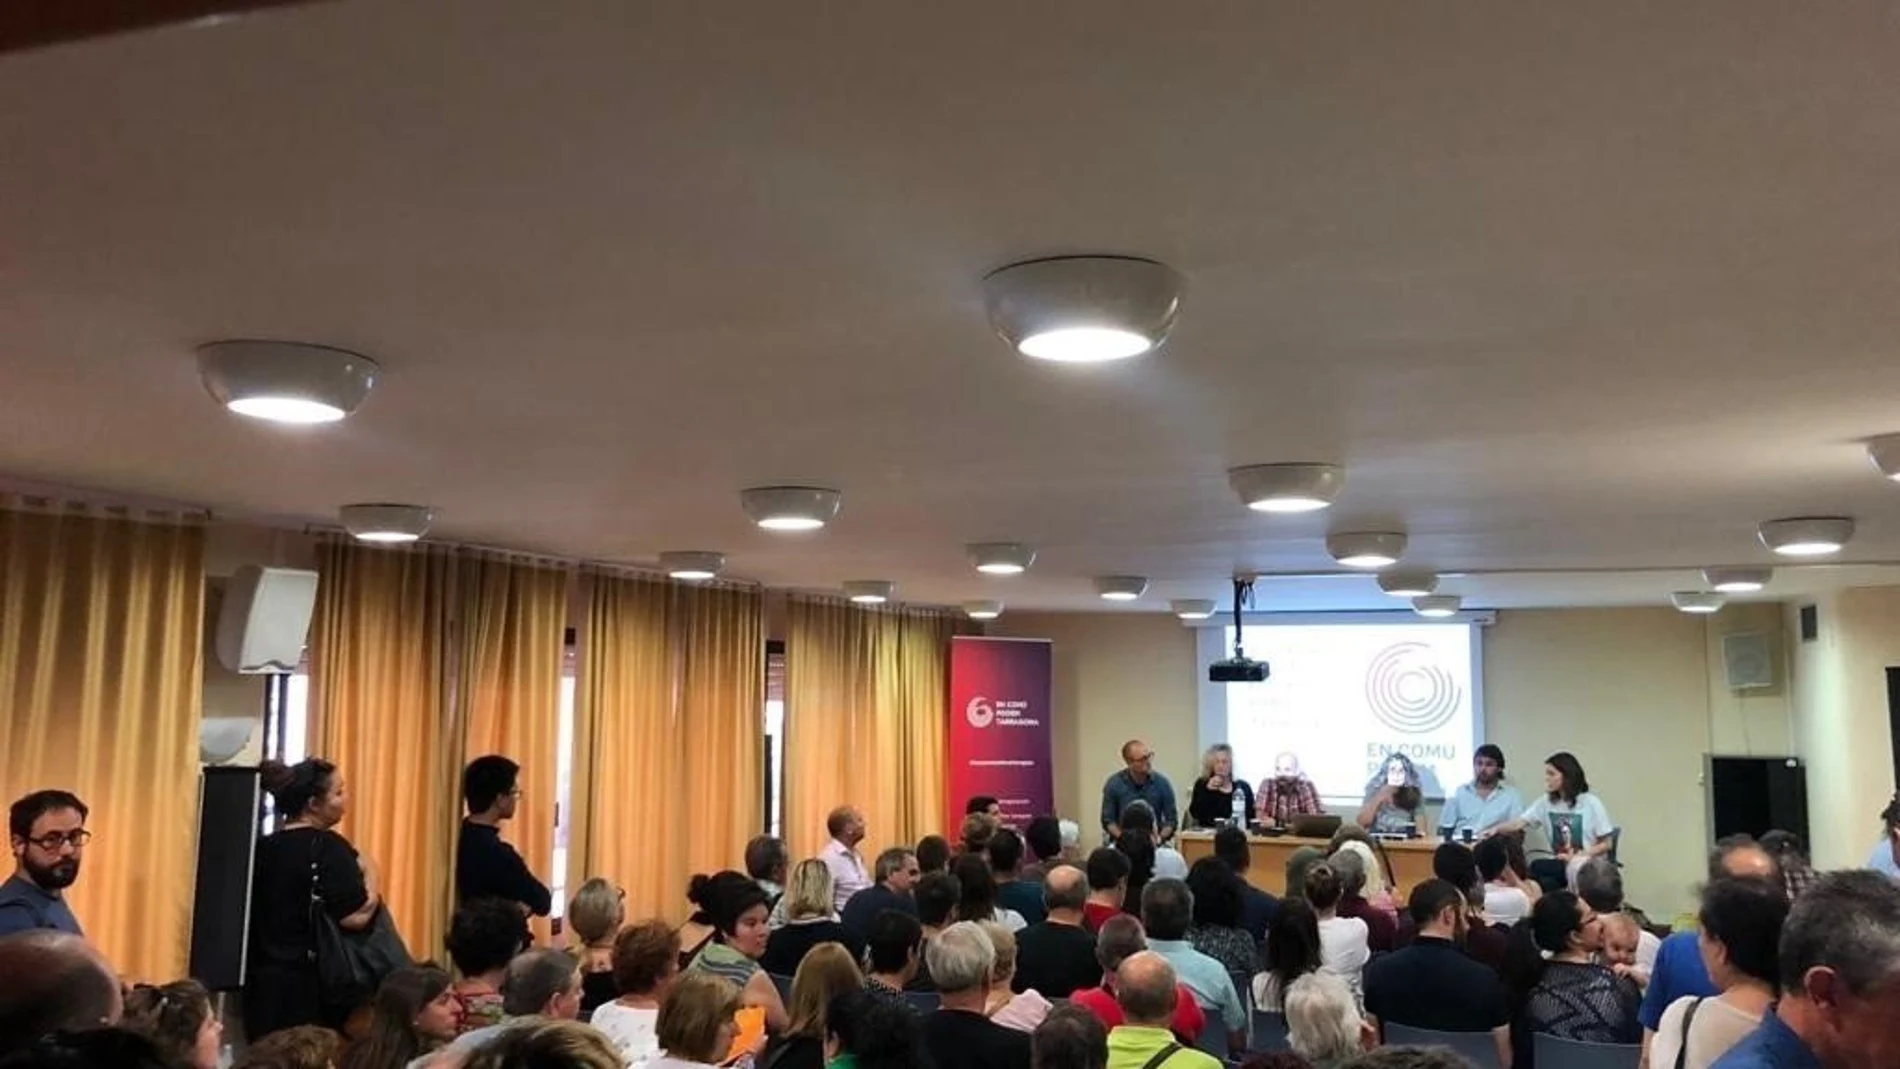 Imagen de la asamblea de anoche de los “comunes” en Tarragona.